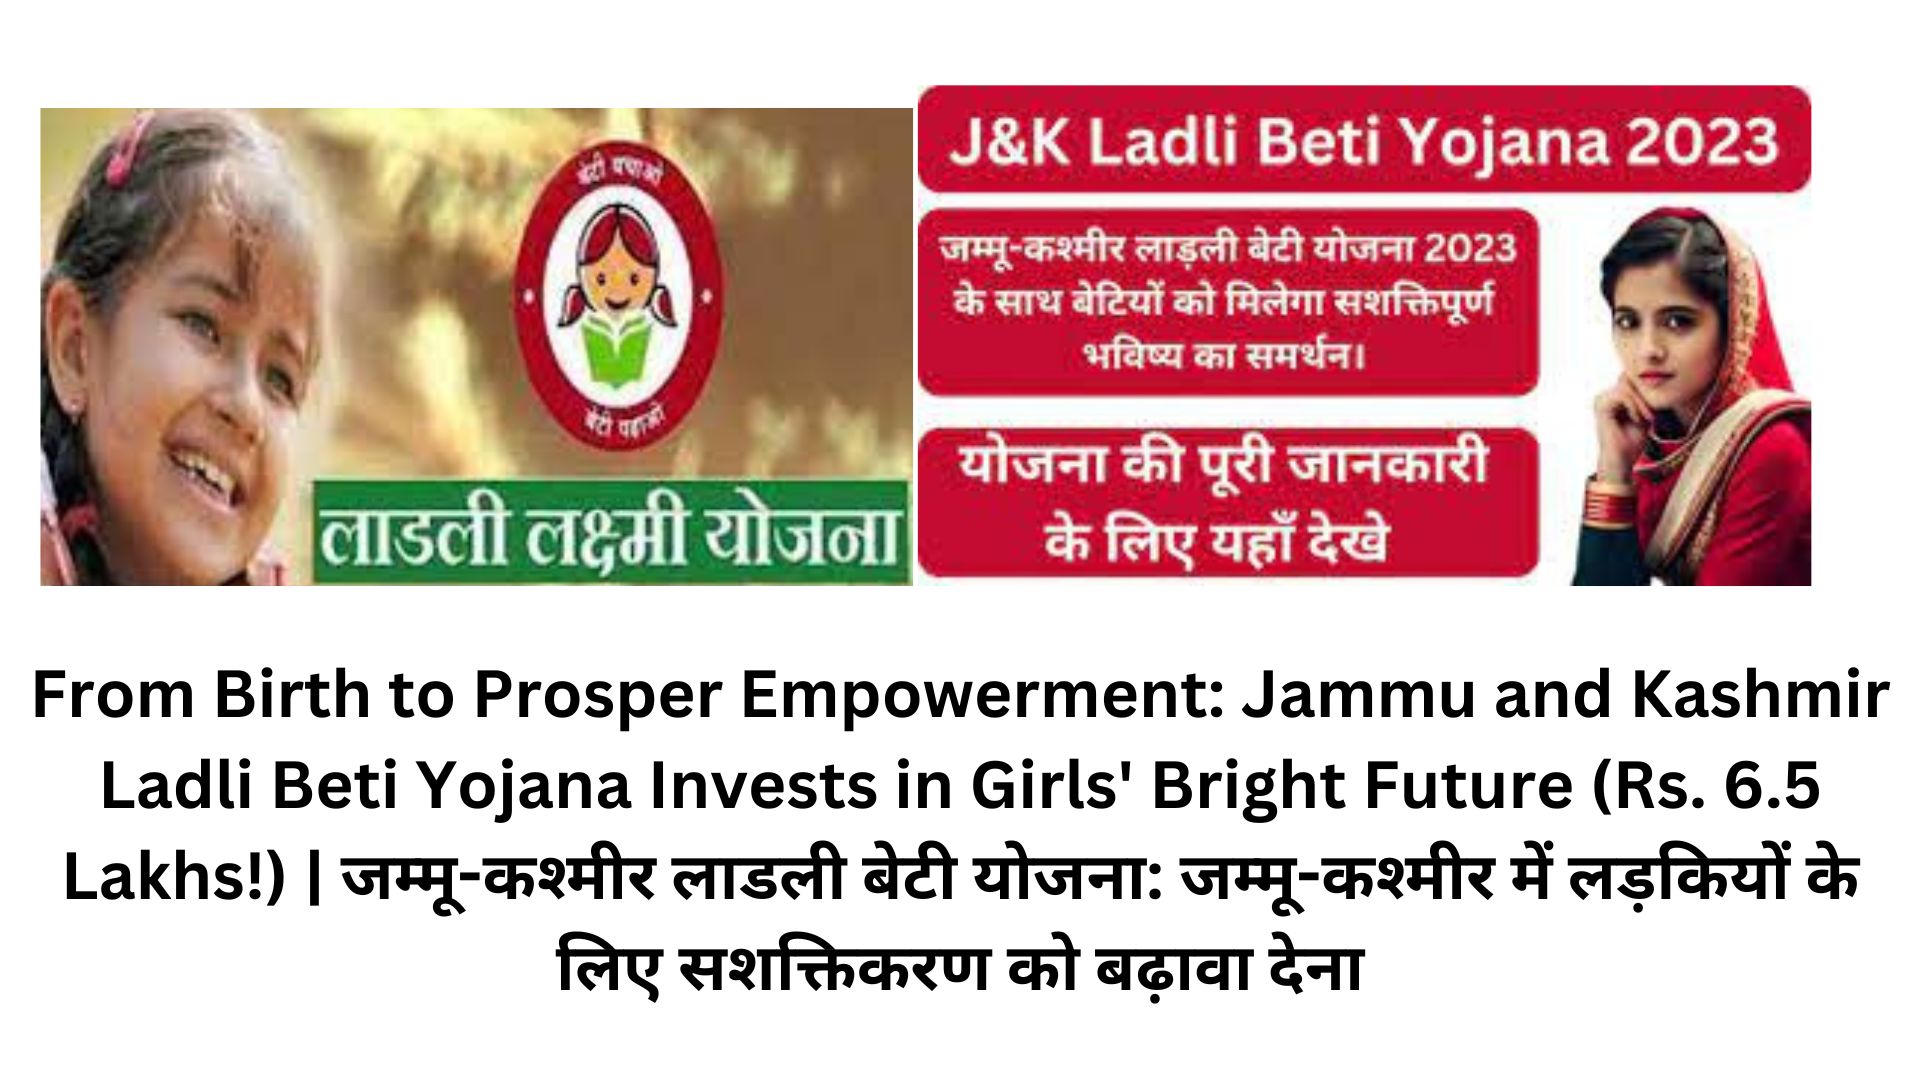 From Birth to Prosper Empowerment: Jammu and Kashmir Ladli Beti Yojana Invests in Girls' Bright Future (Rs. 6.5 Lakhs!) | जम्मू-कश्मीर लाडली बेटी योजना: जम्मू-कश्मीर में लड़कियों के लिए सशक्तिकरण को बढ़ावा देना